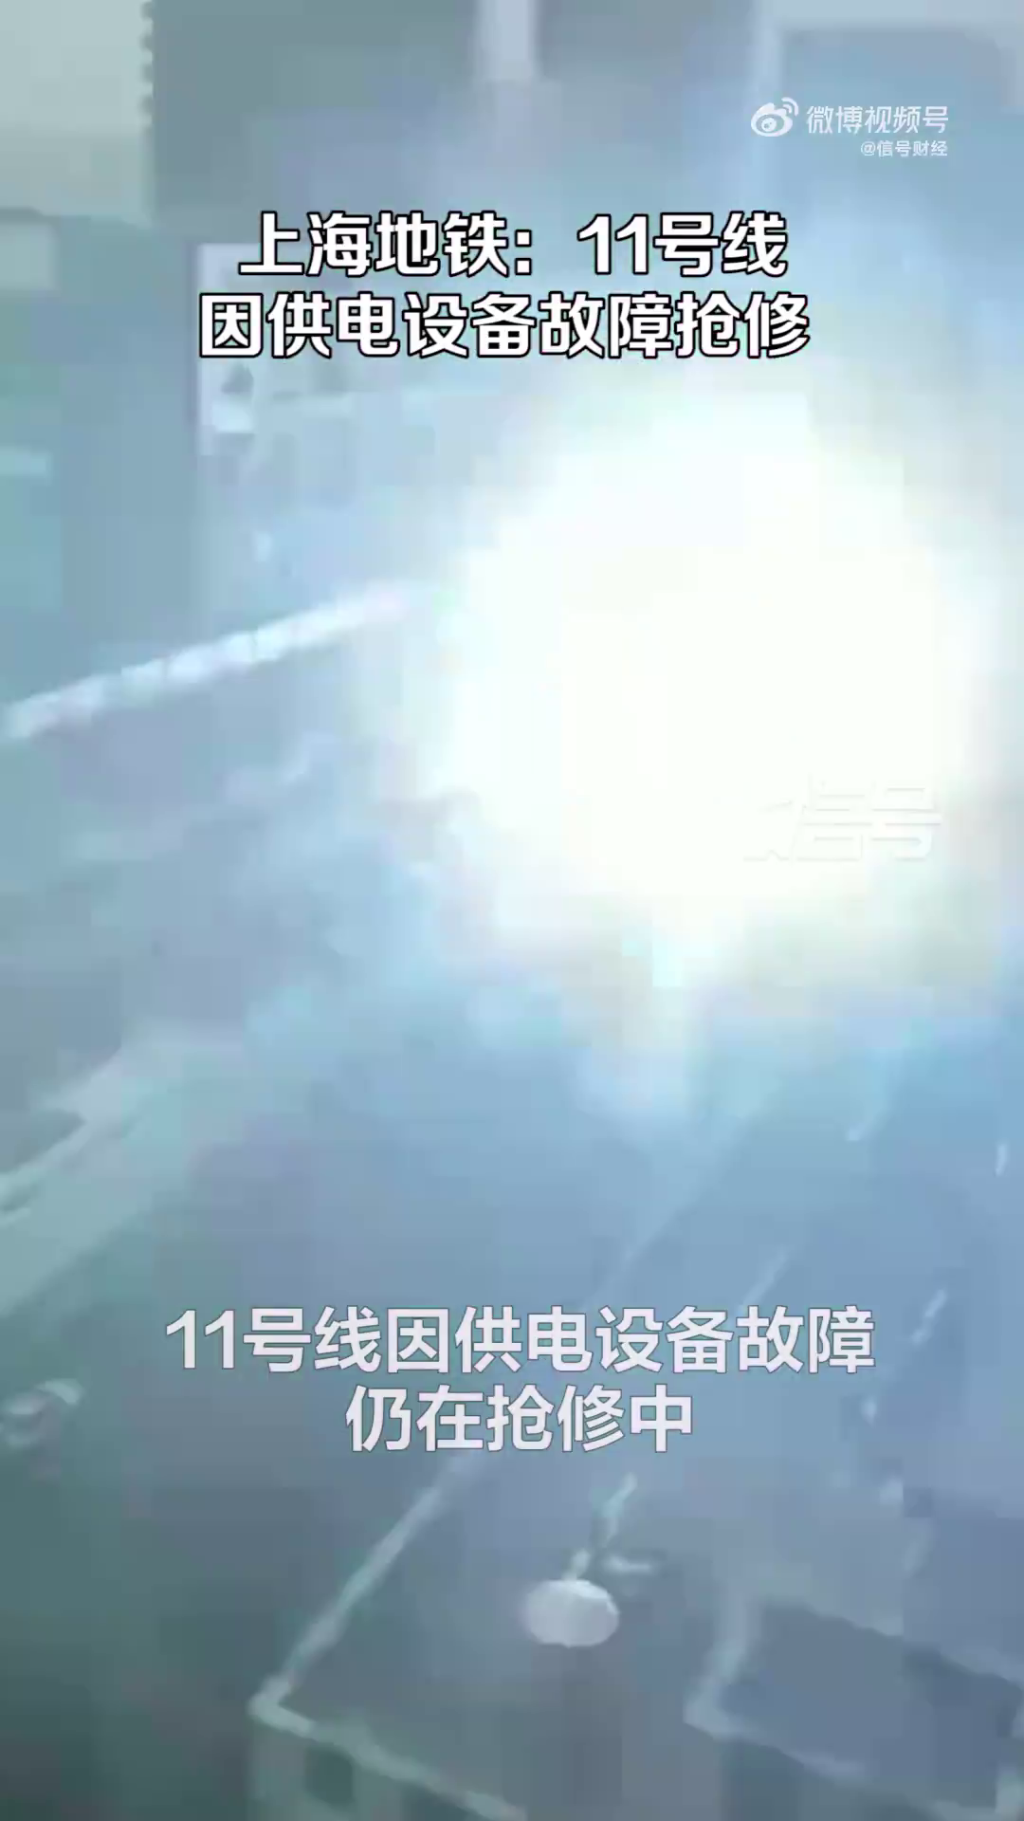 上海地鐵故障，冒出火光，面積範圍相當大。